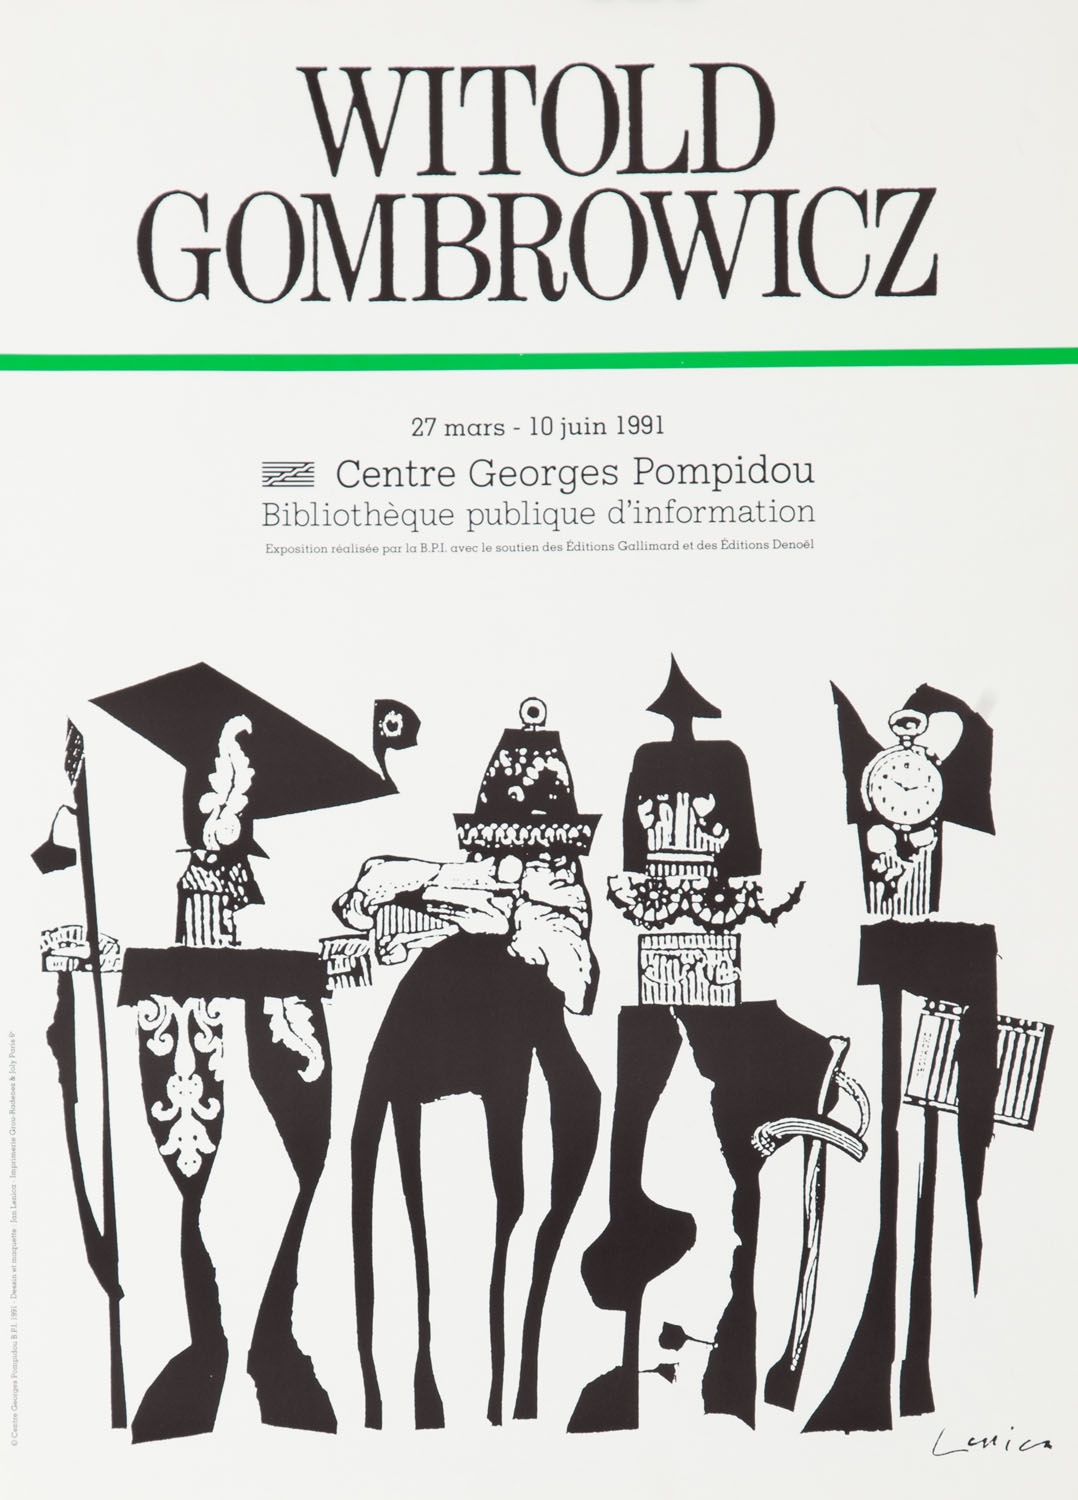 Plakat do wystawy "Witold Gombrowicz" by Jan Lenica, 1991